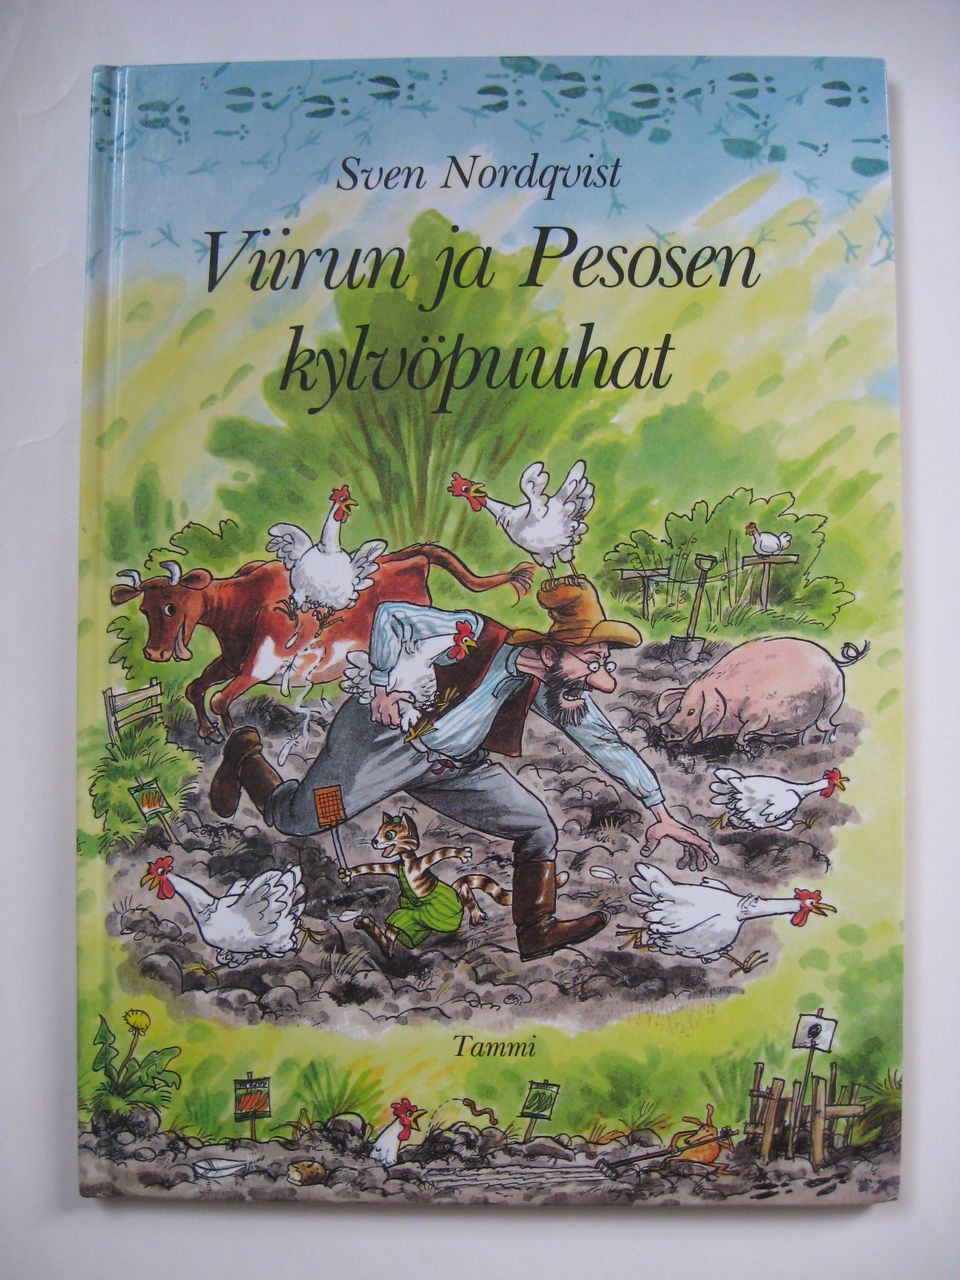 Sven Nordqvist, Viirun ja Pesosen kylvöpuuhat